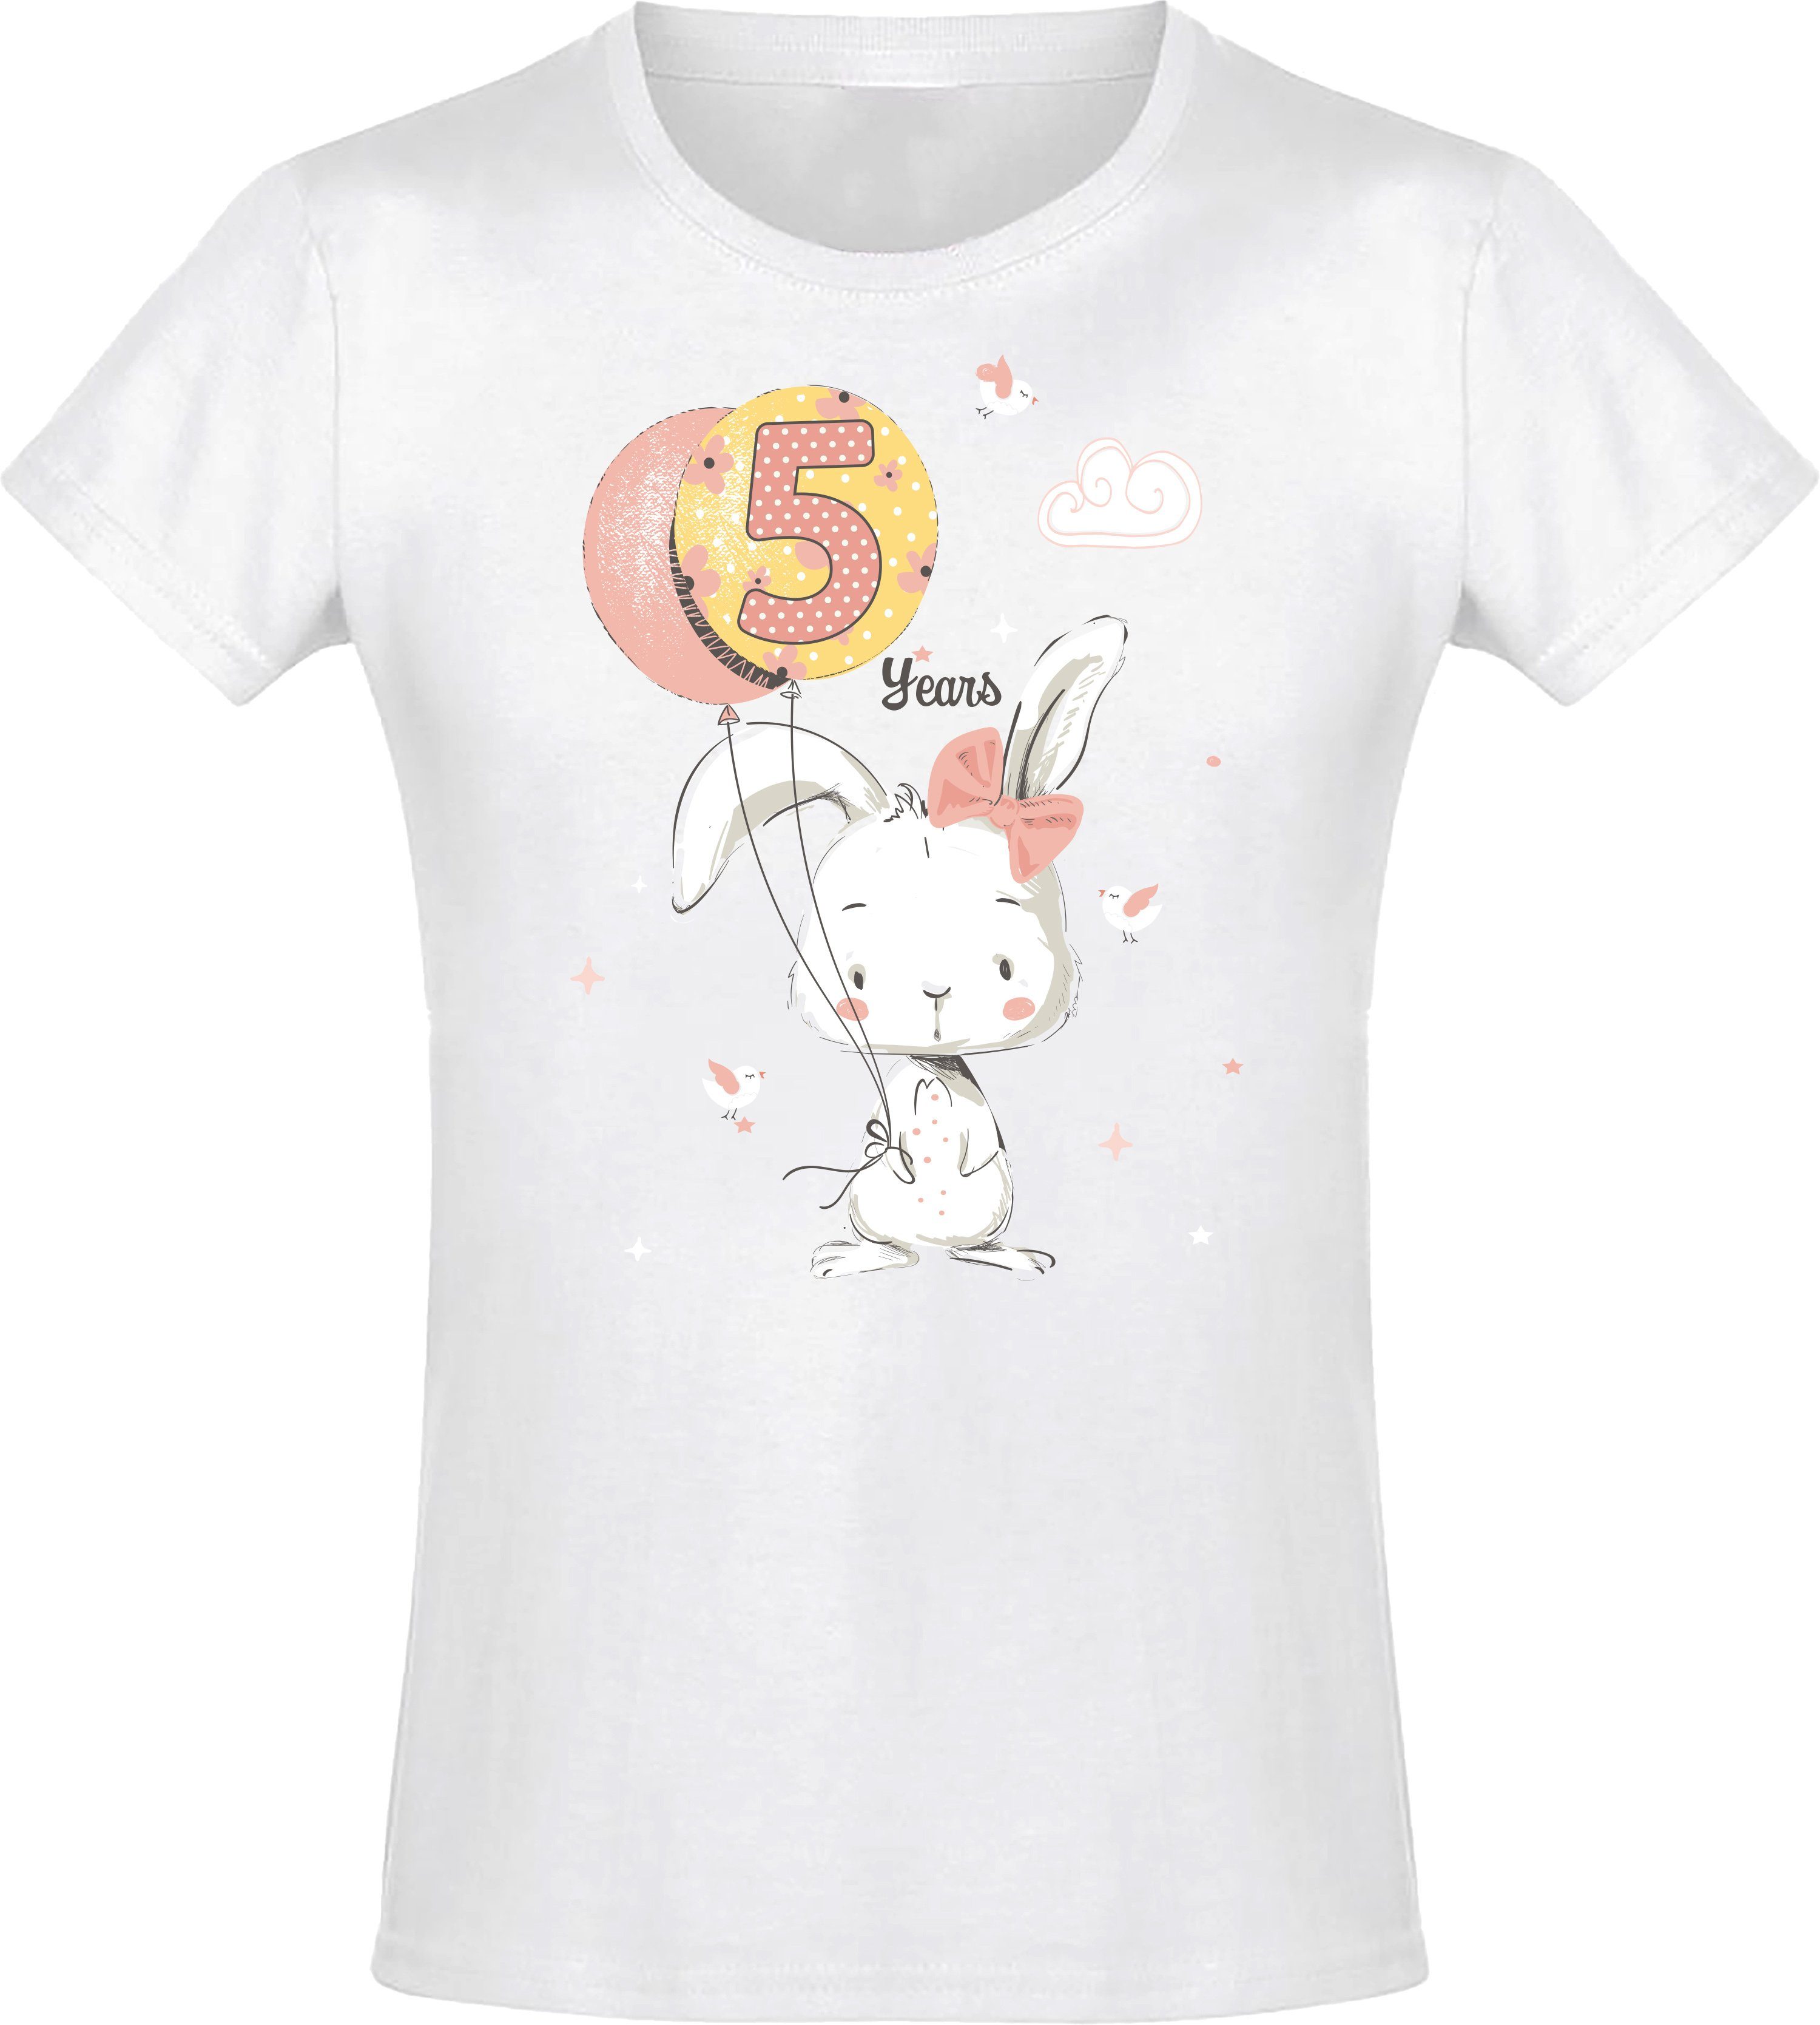 Baddery Print-Shirt Geburstagsgeschenk für Mädchen : 5 Jahre mit Hase hochwertiger Siebdruck, aus Baumwolle Weiß